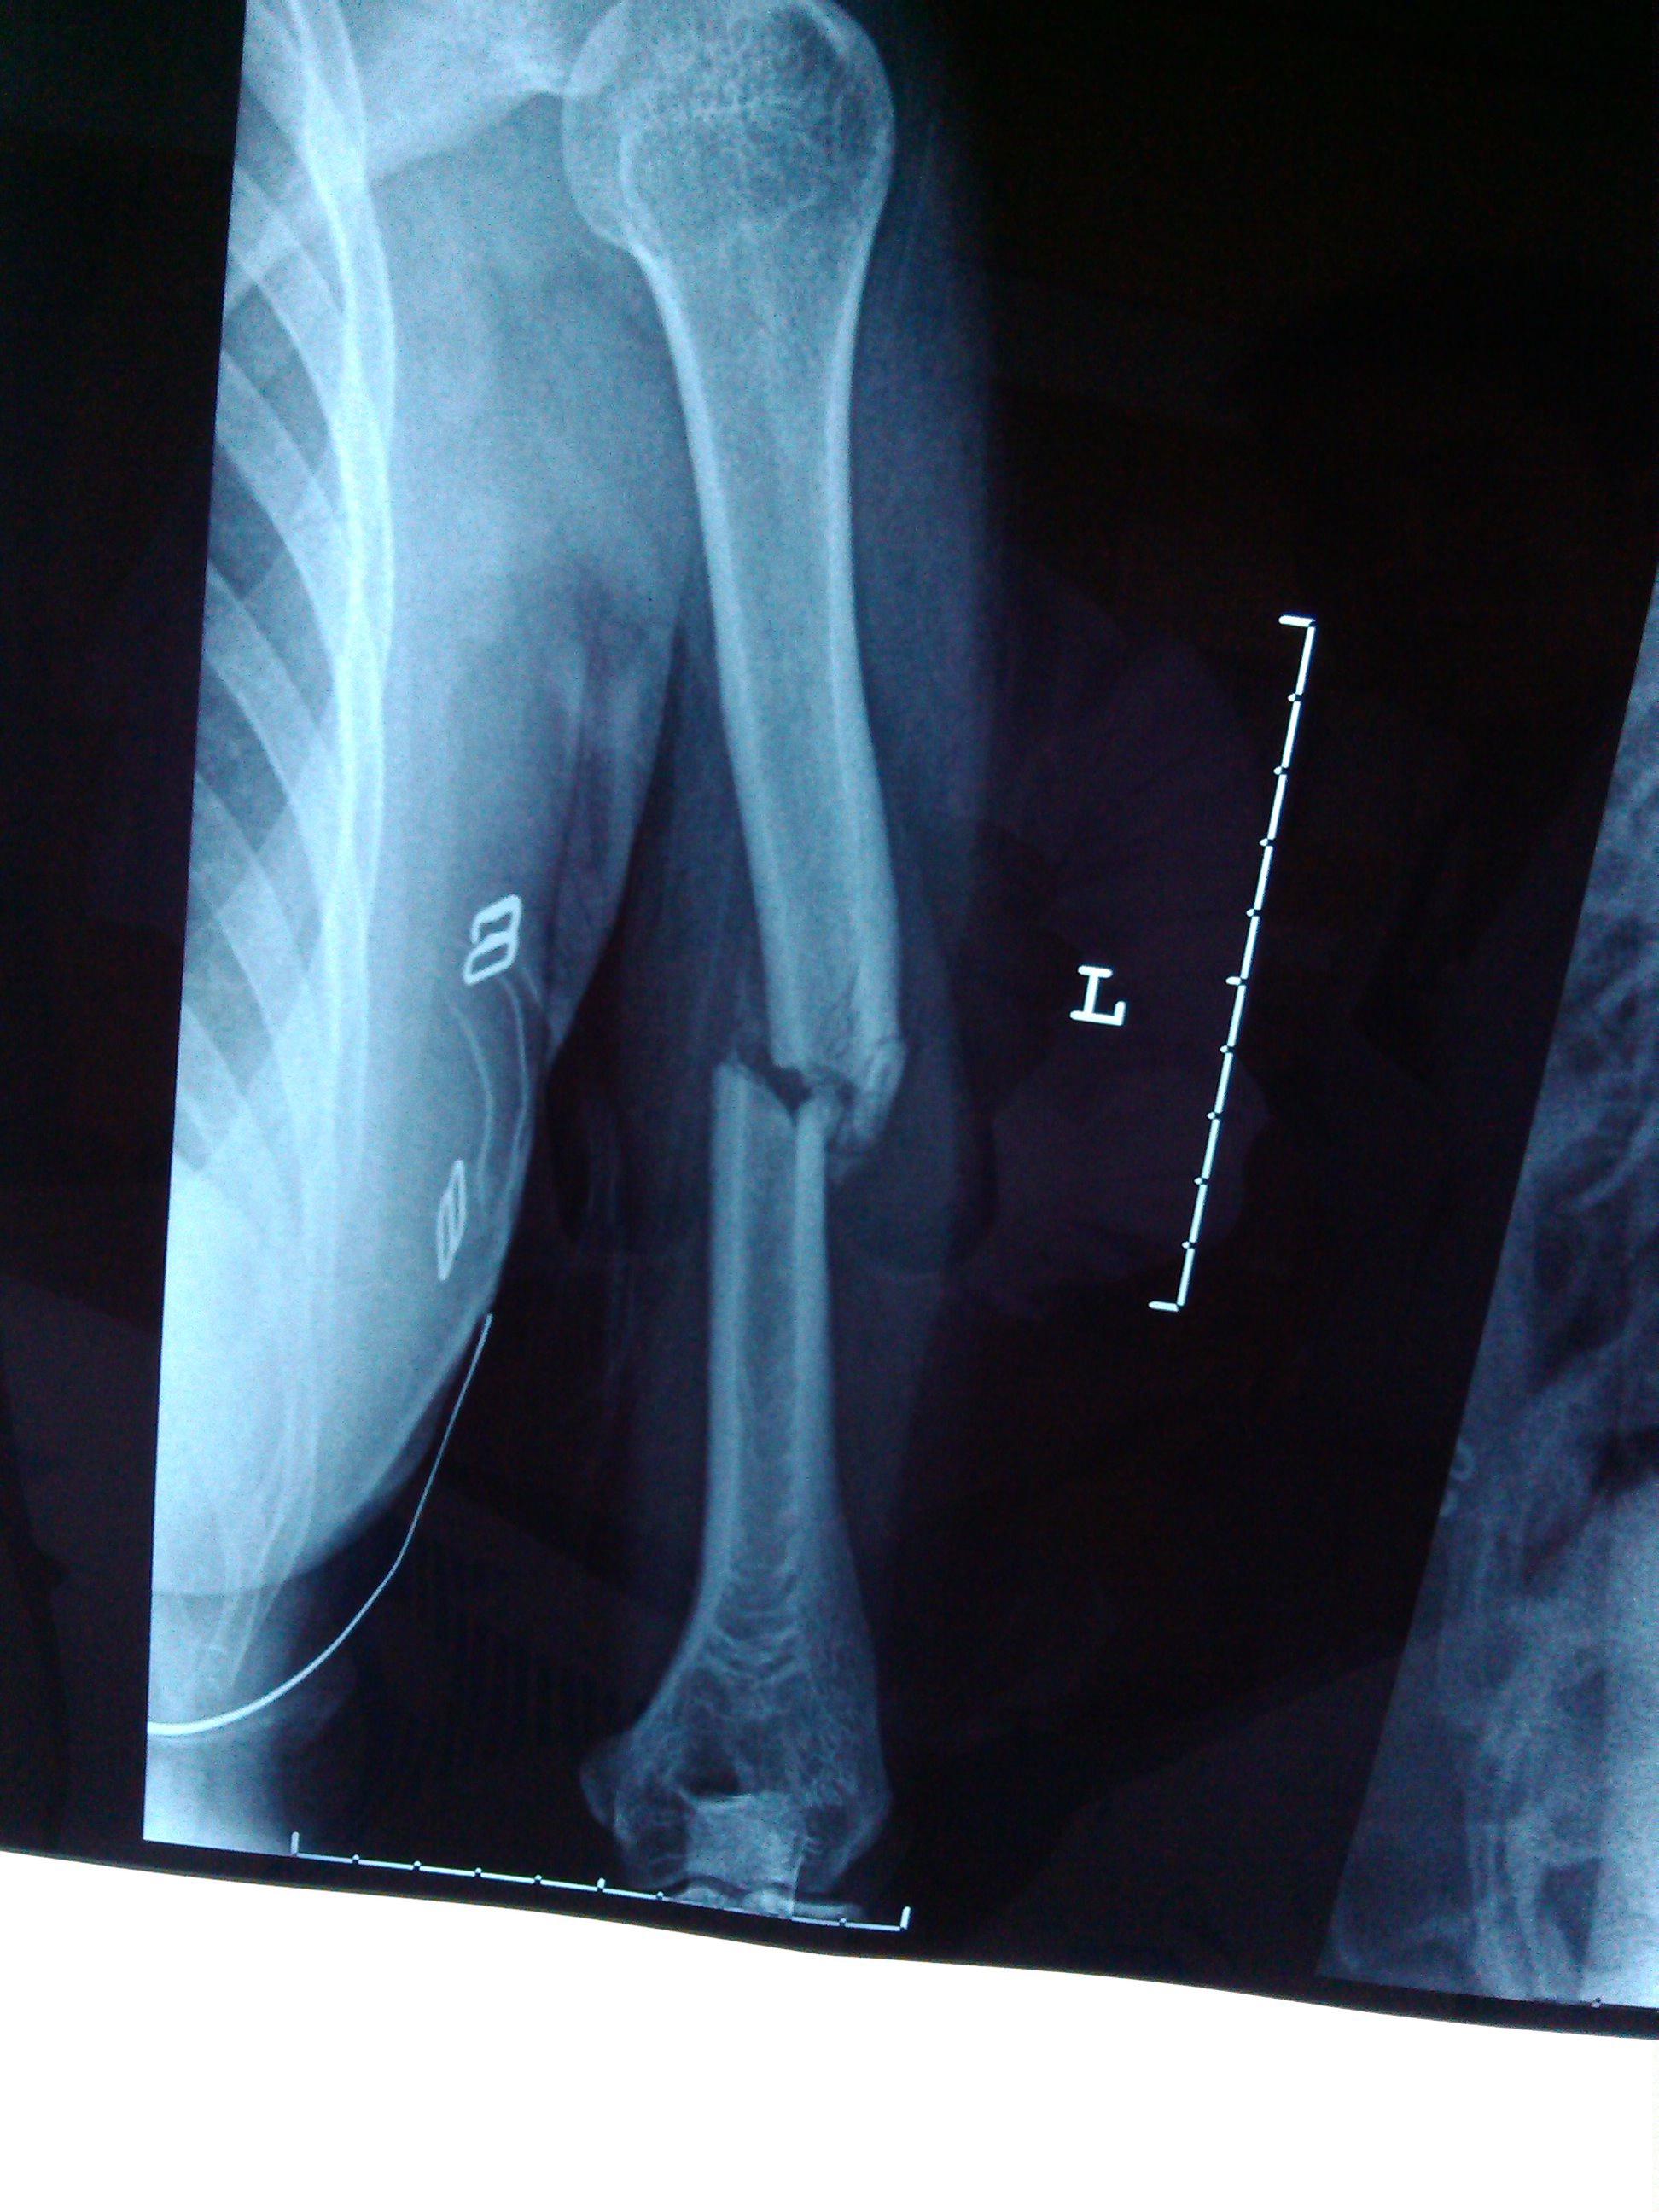 左肱骨上段骨折的图片图片